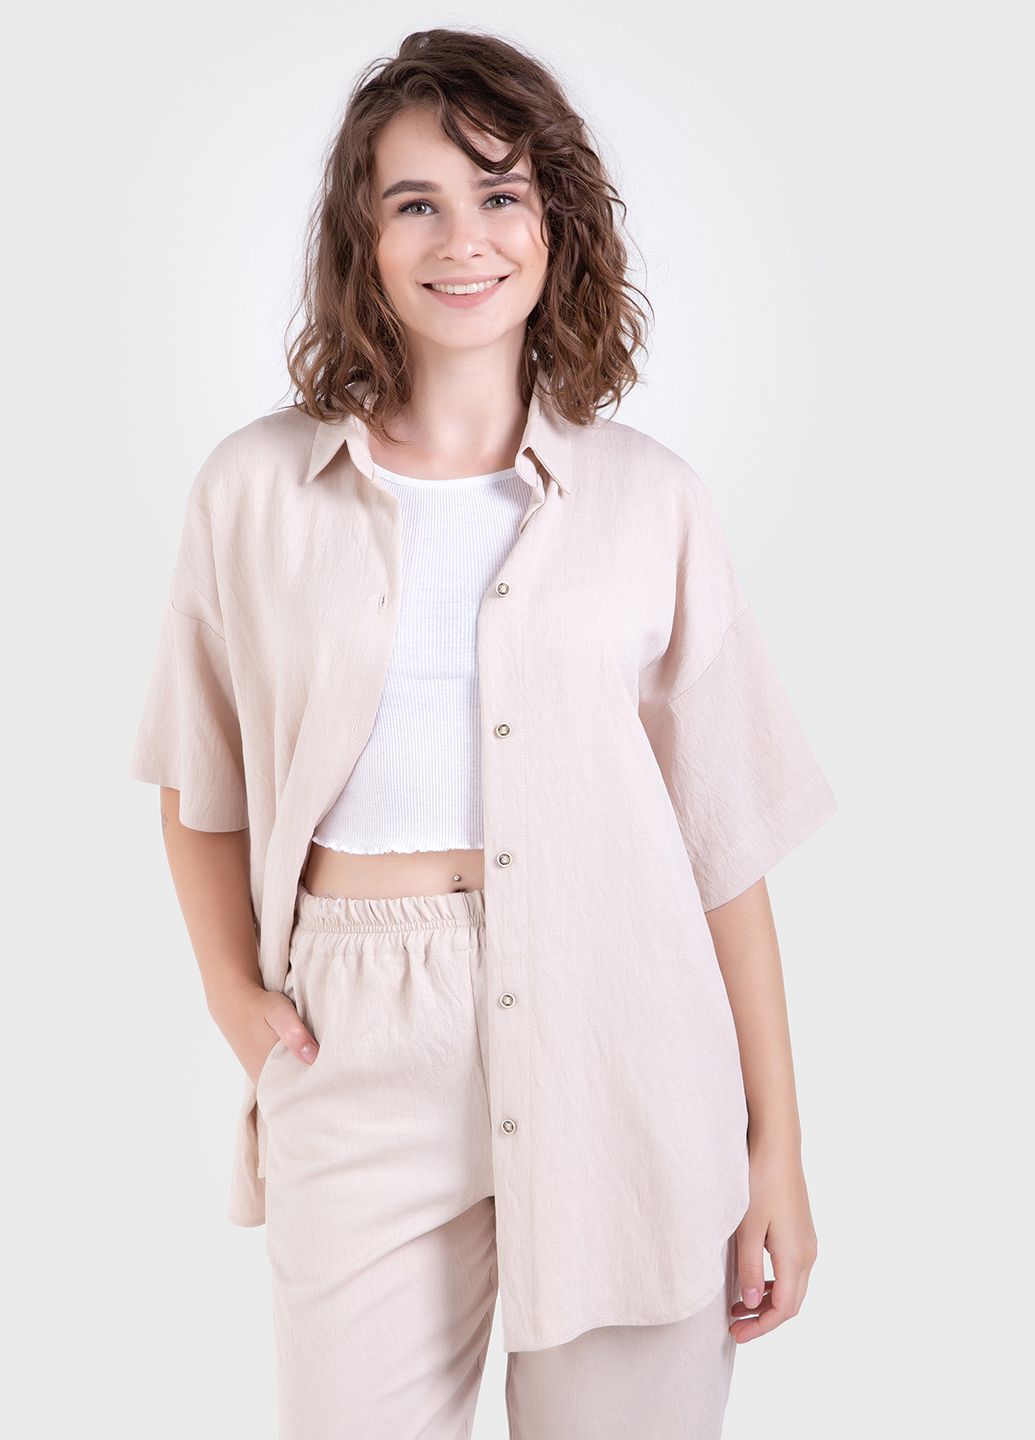 Купить Летний костюм женский двойка бежевого цвета: брюки, рубашка Merlini Авиано 100000153, размер 42-44 в интернет-магазине